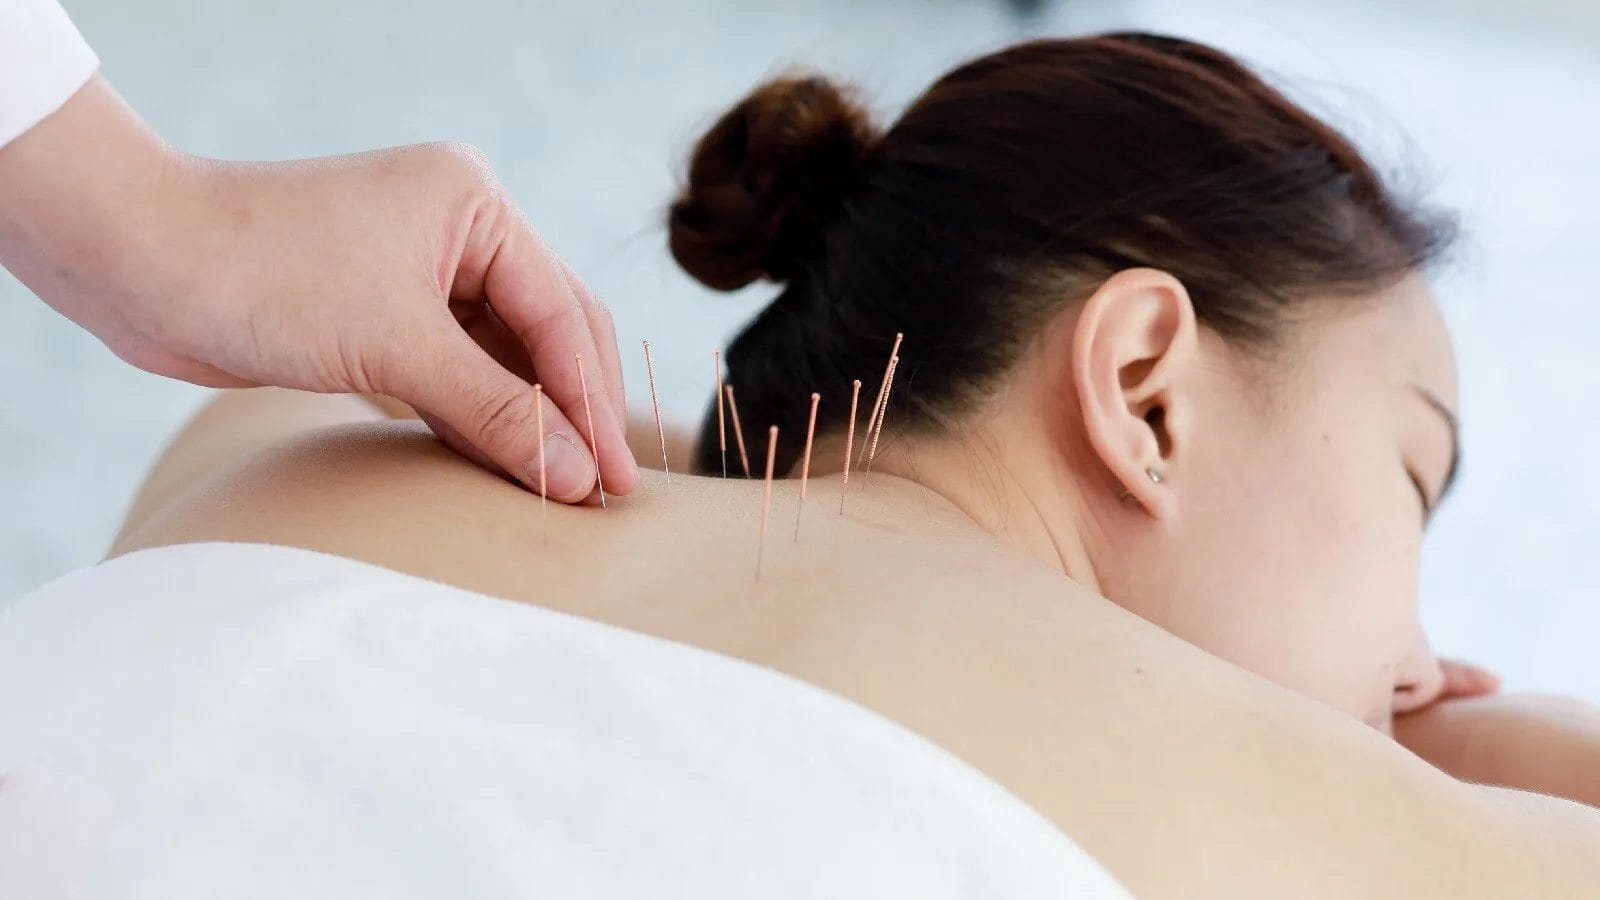 terapi akupunktur telah terbukti efektif dalam mengobati disfungsi ereksi